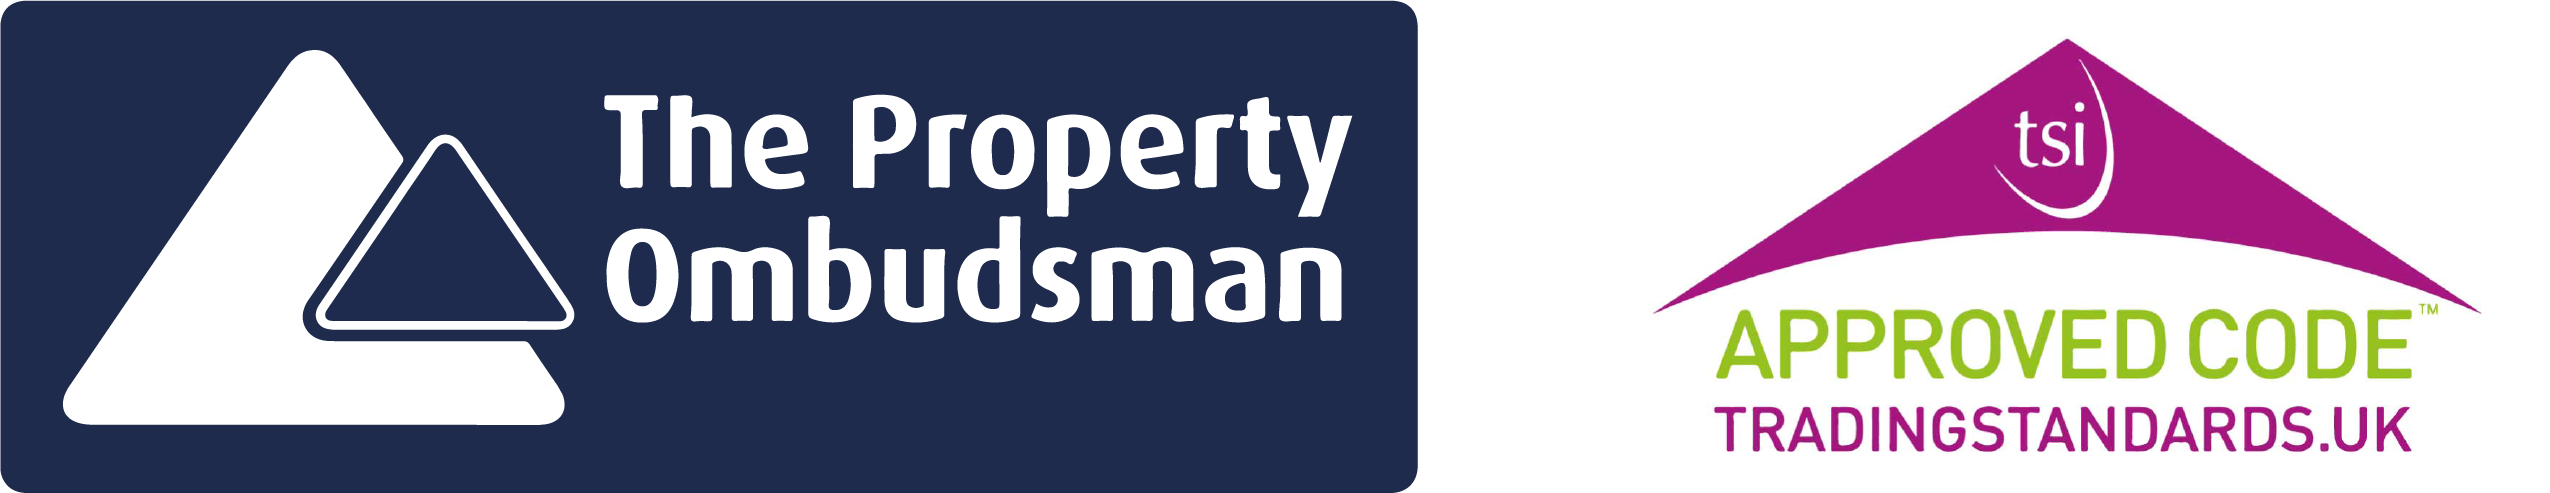 The property obudsman